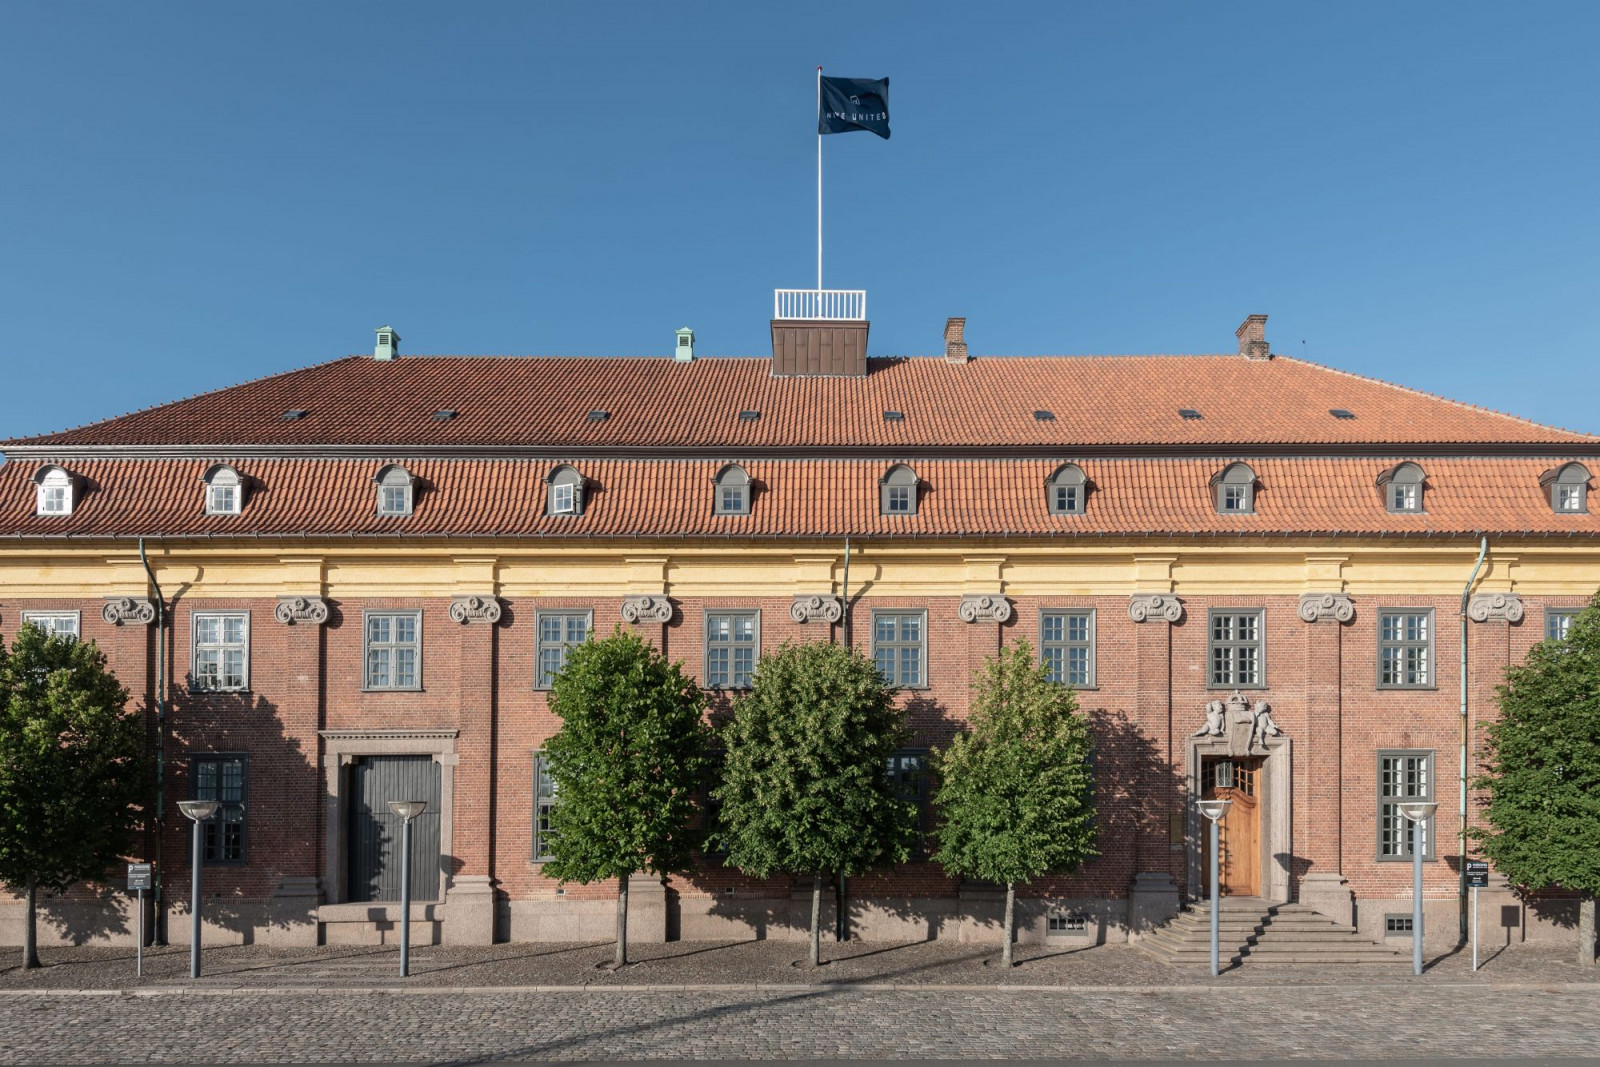 Customs House, Horsens, Denmark